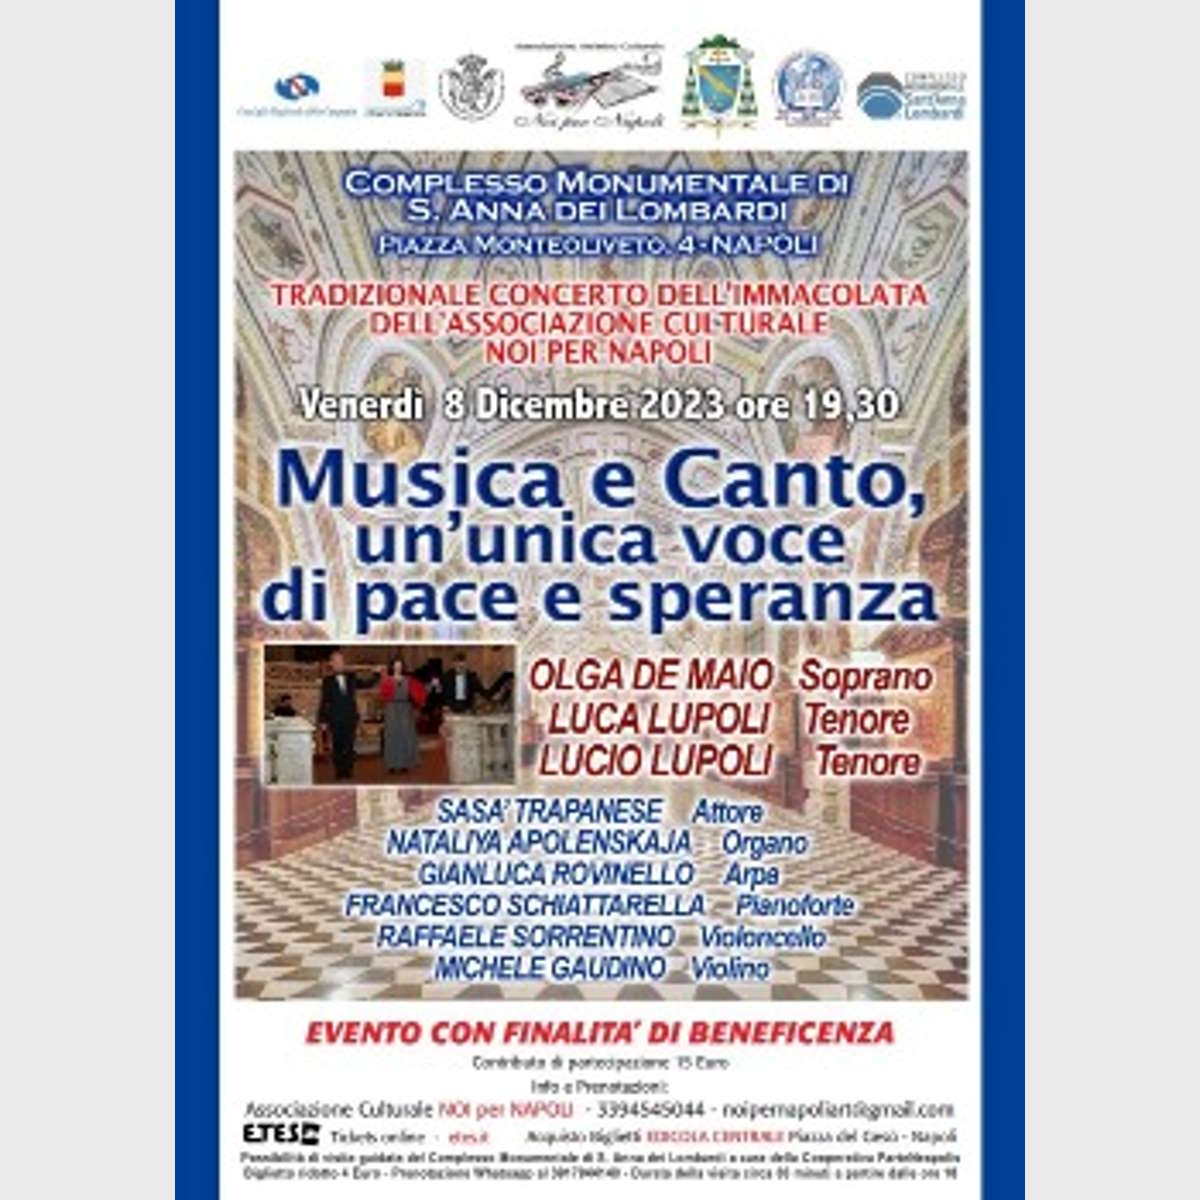 Tradizionale Concerto dell'Immacolata 2023 a Napoli